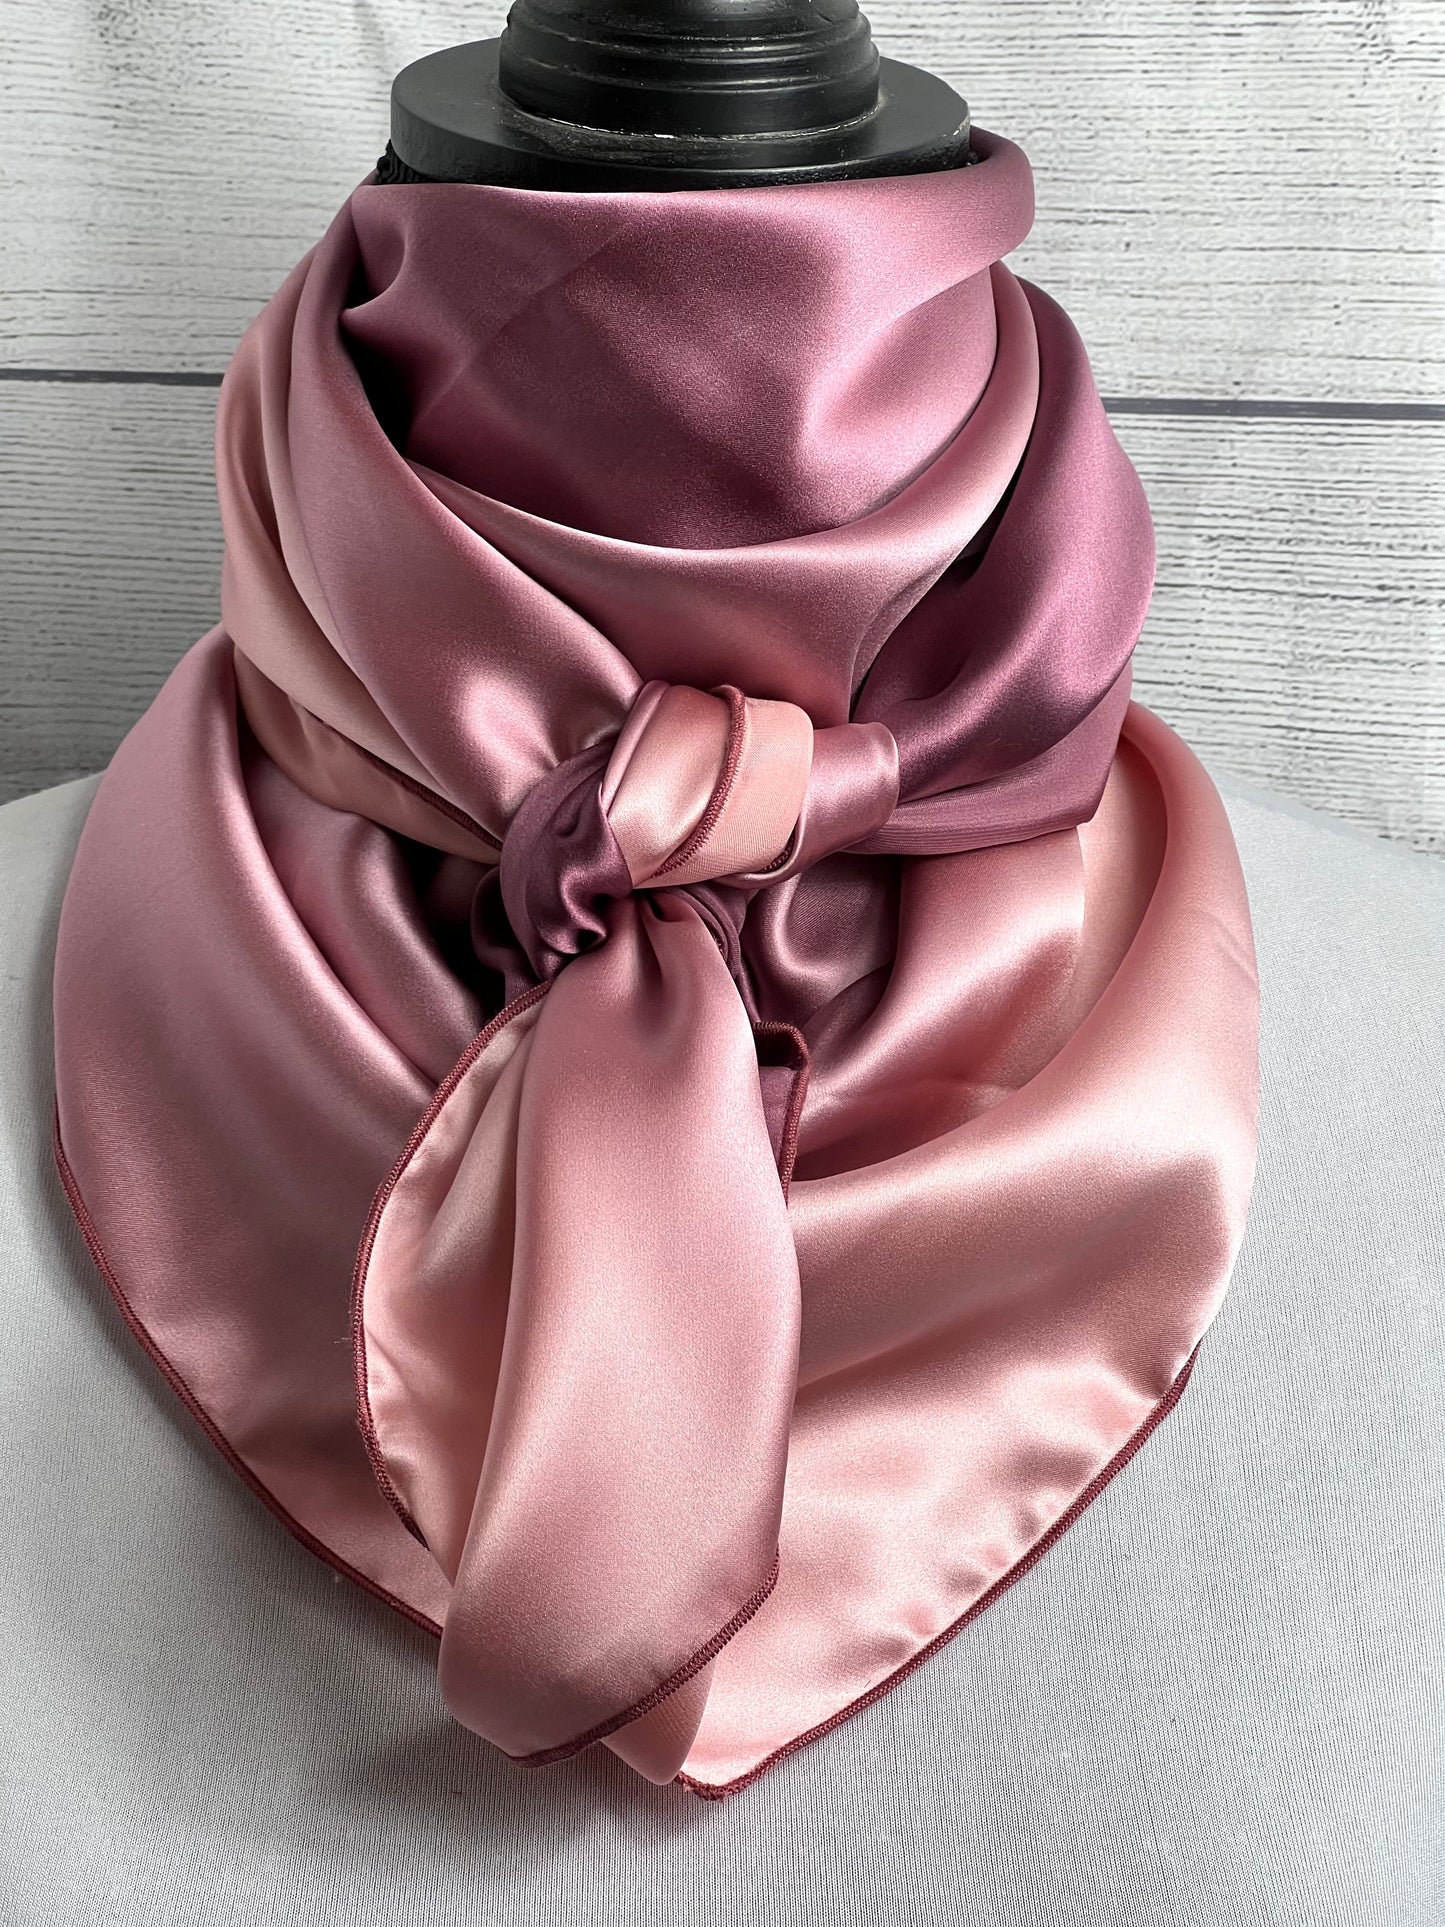 
                  
                    The Mauve Ombré Silk Rag
                  
                